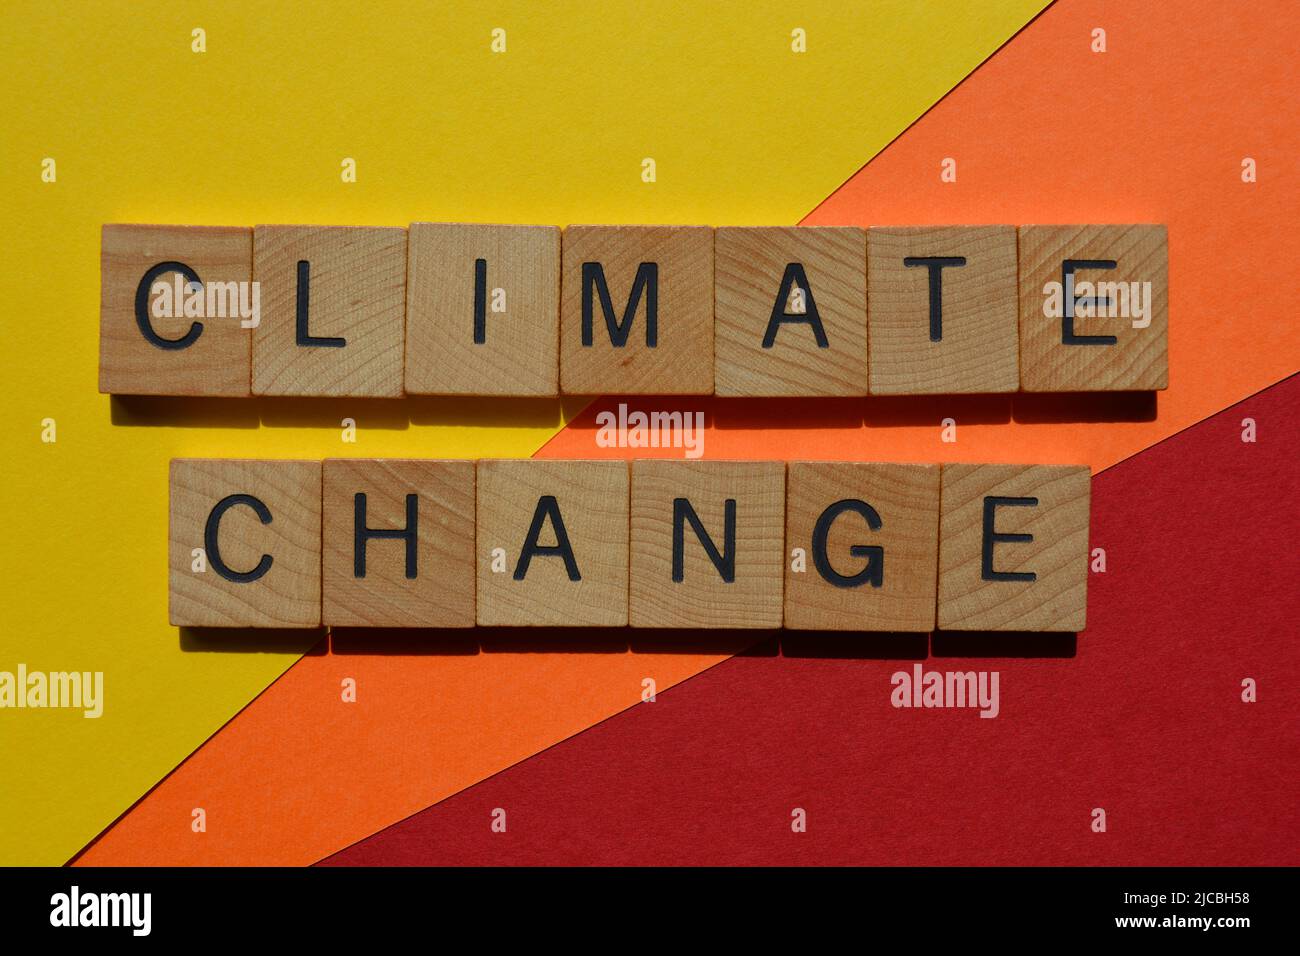 Cambio climático, palabras en letras de alfabeto de madera aisladas sobre fondo rojo, naranja y amarillo Foto de stock